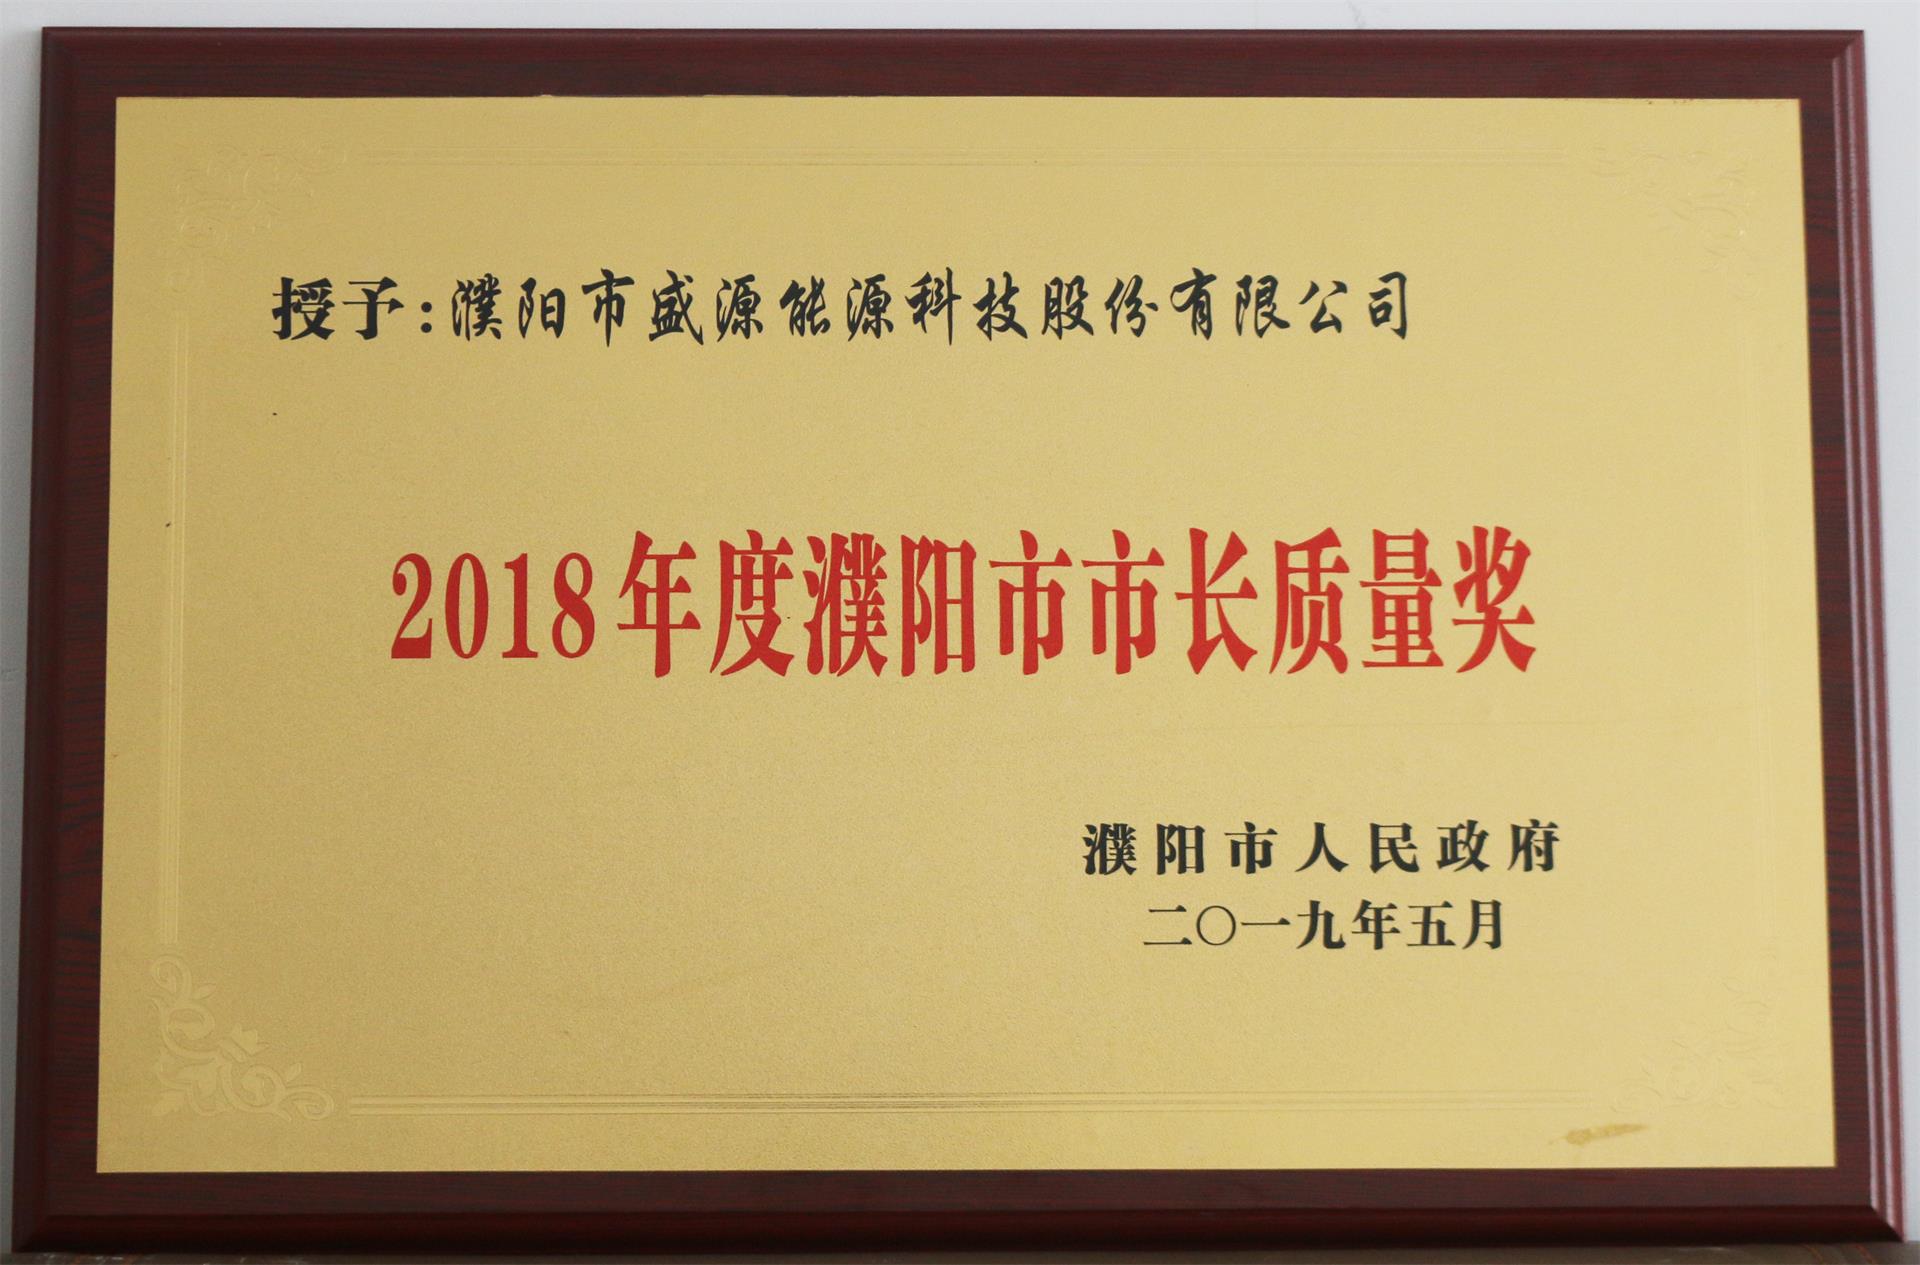 13.2019年5月，盛源科技荣获“2018年度濮阳市市长质量奖”荣誉称号.JPG